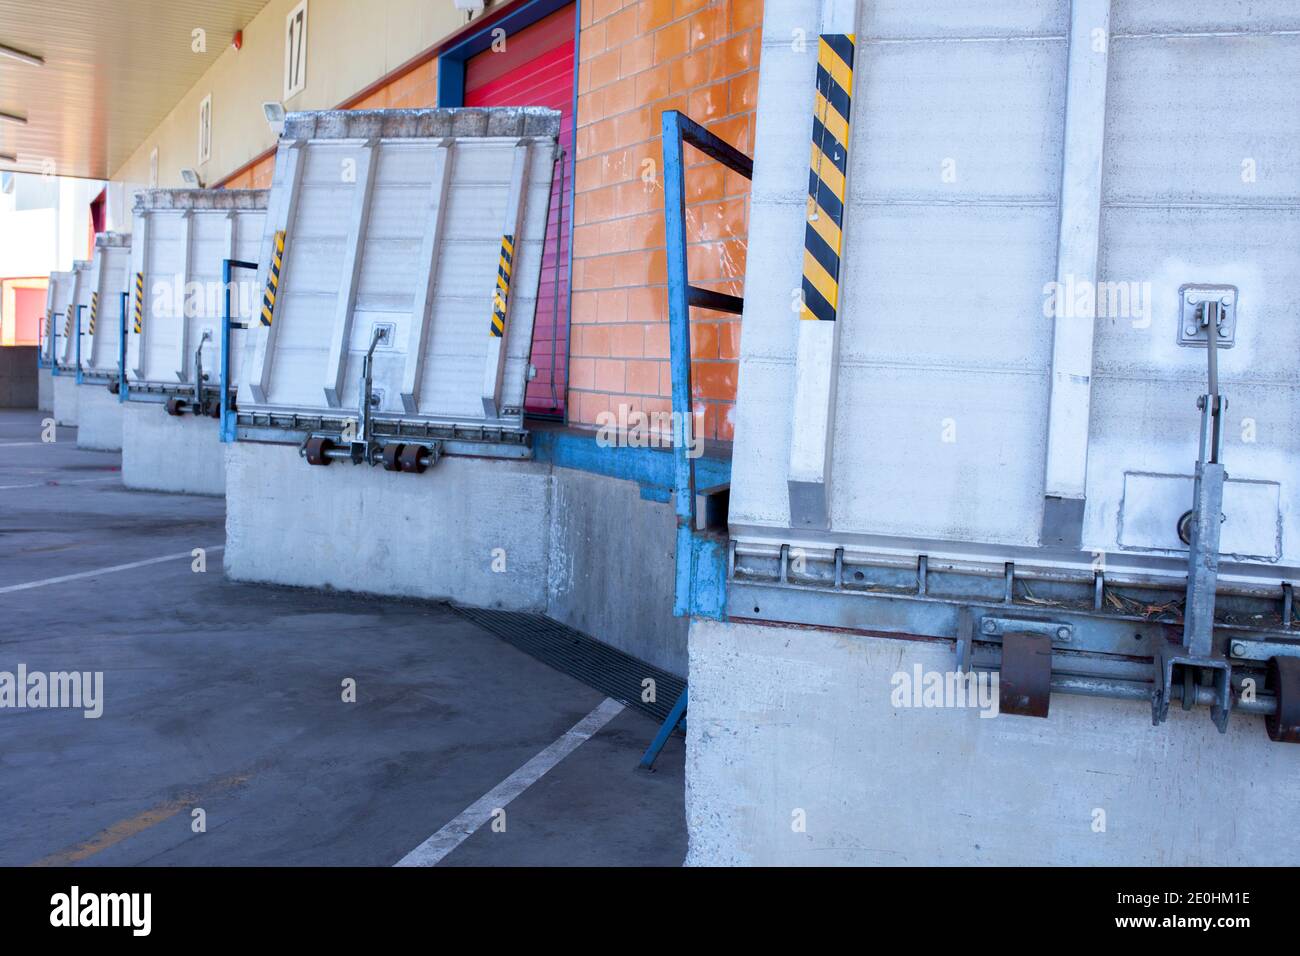 Truck loading docks at commercial building. Overhead door, dock leveler, and dock seals Stock Photo